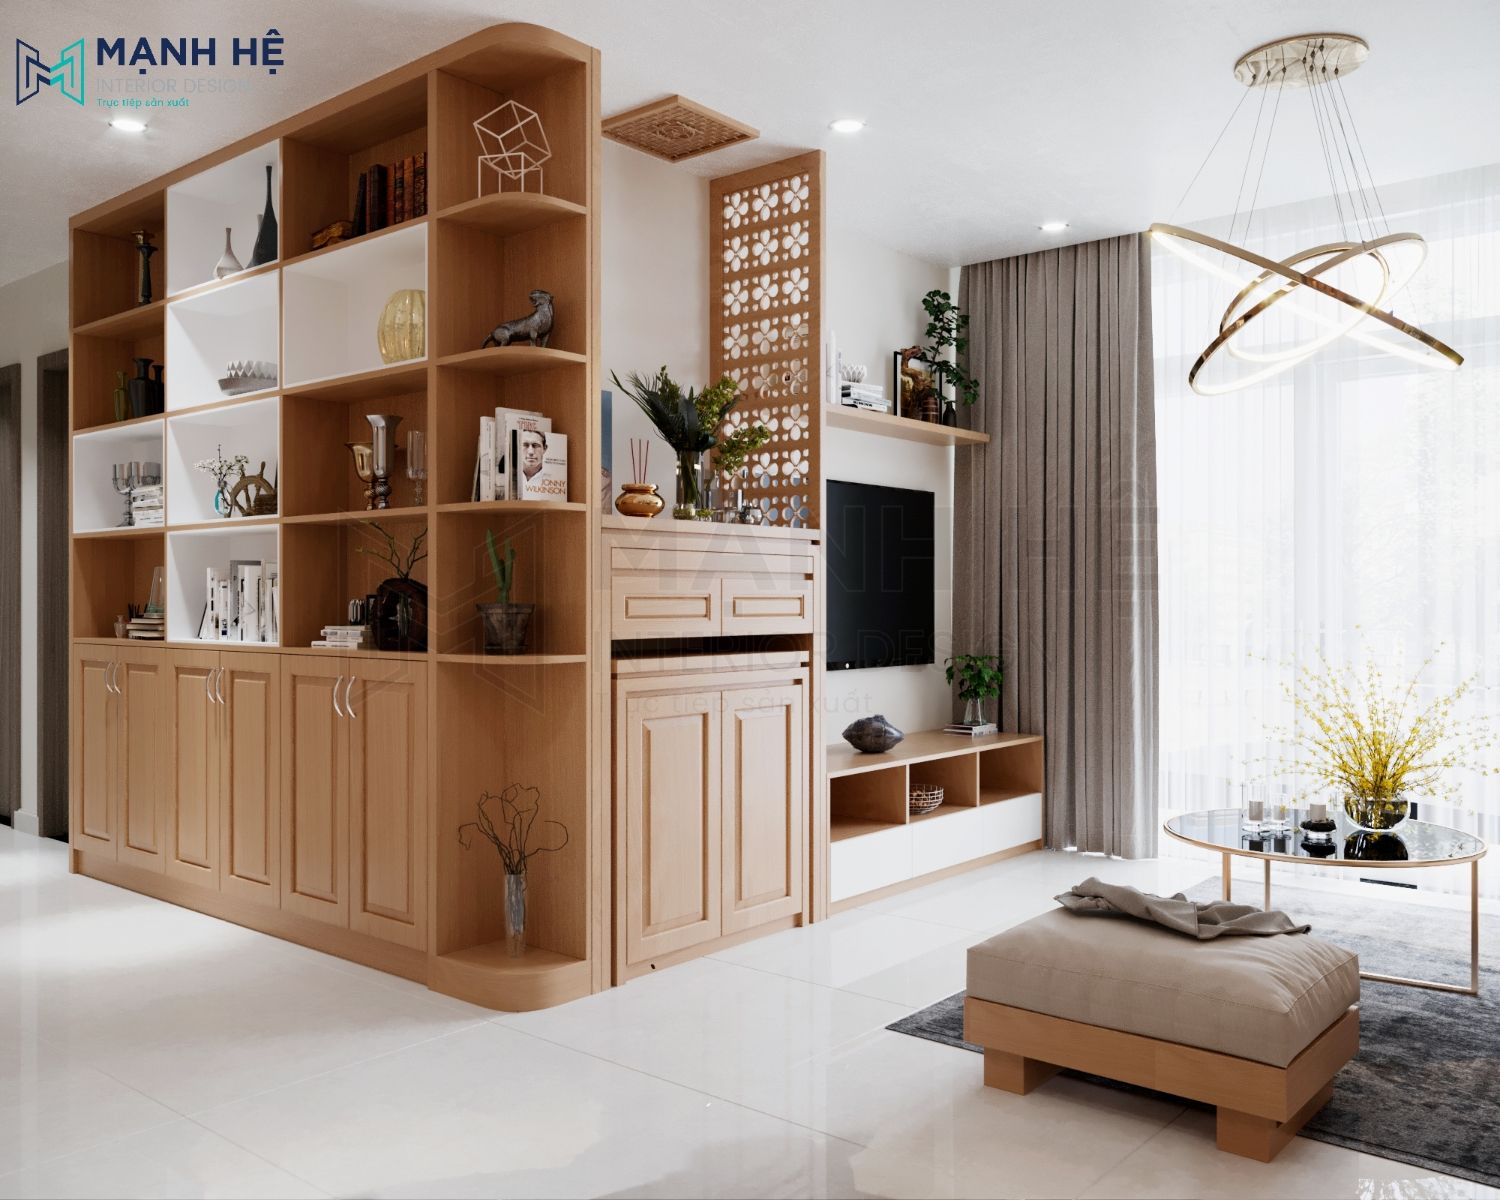 Thể hiện sự tinh tế và đẳng cấp cho ngôi nhà bạn với thiết kế nội thất gỗ tự nhiên